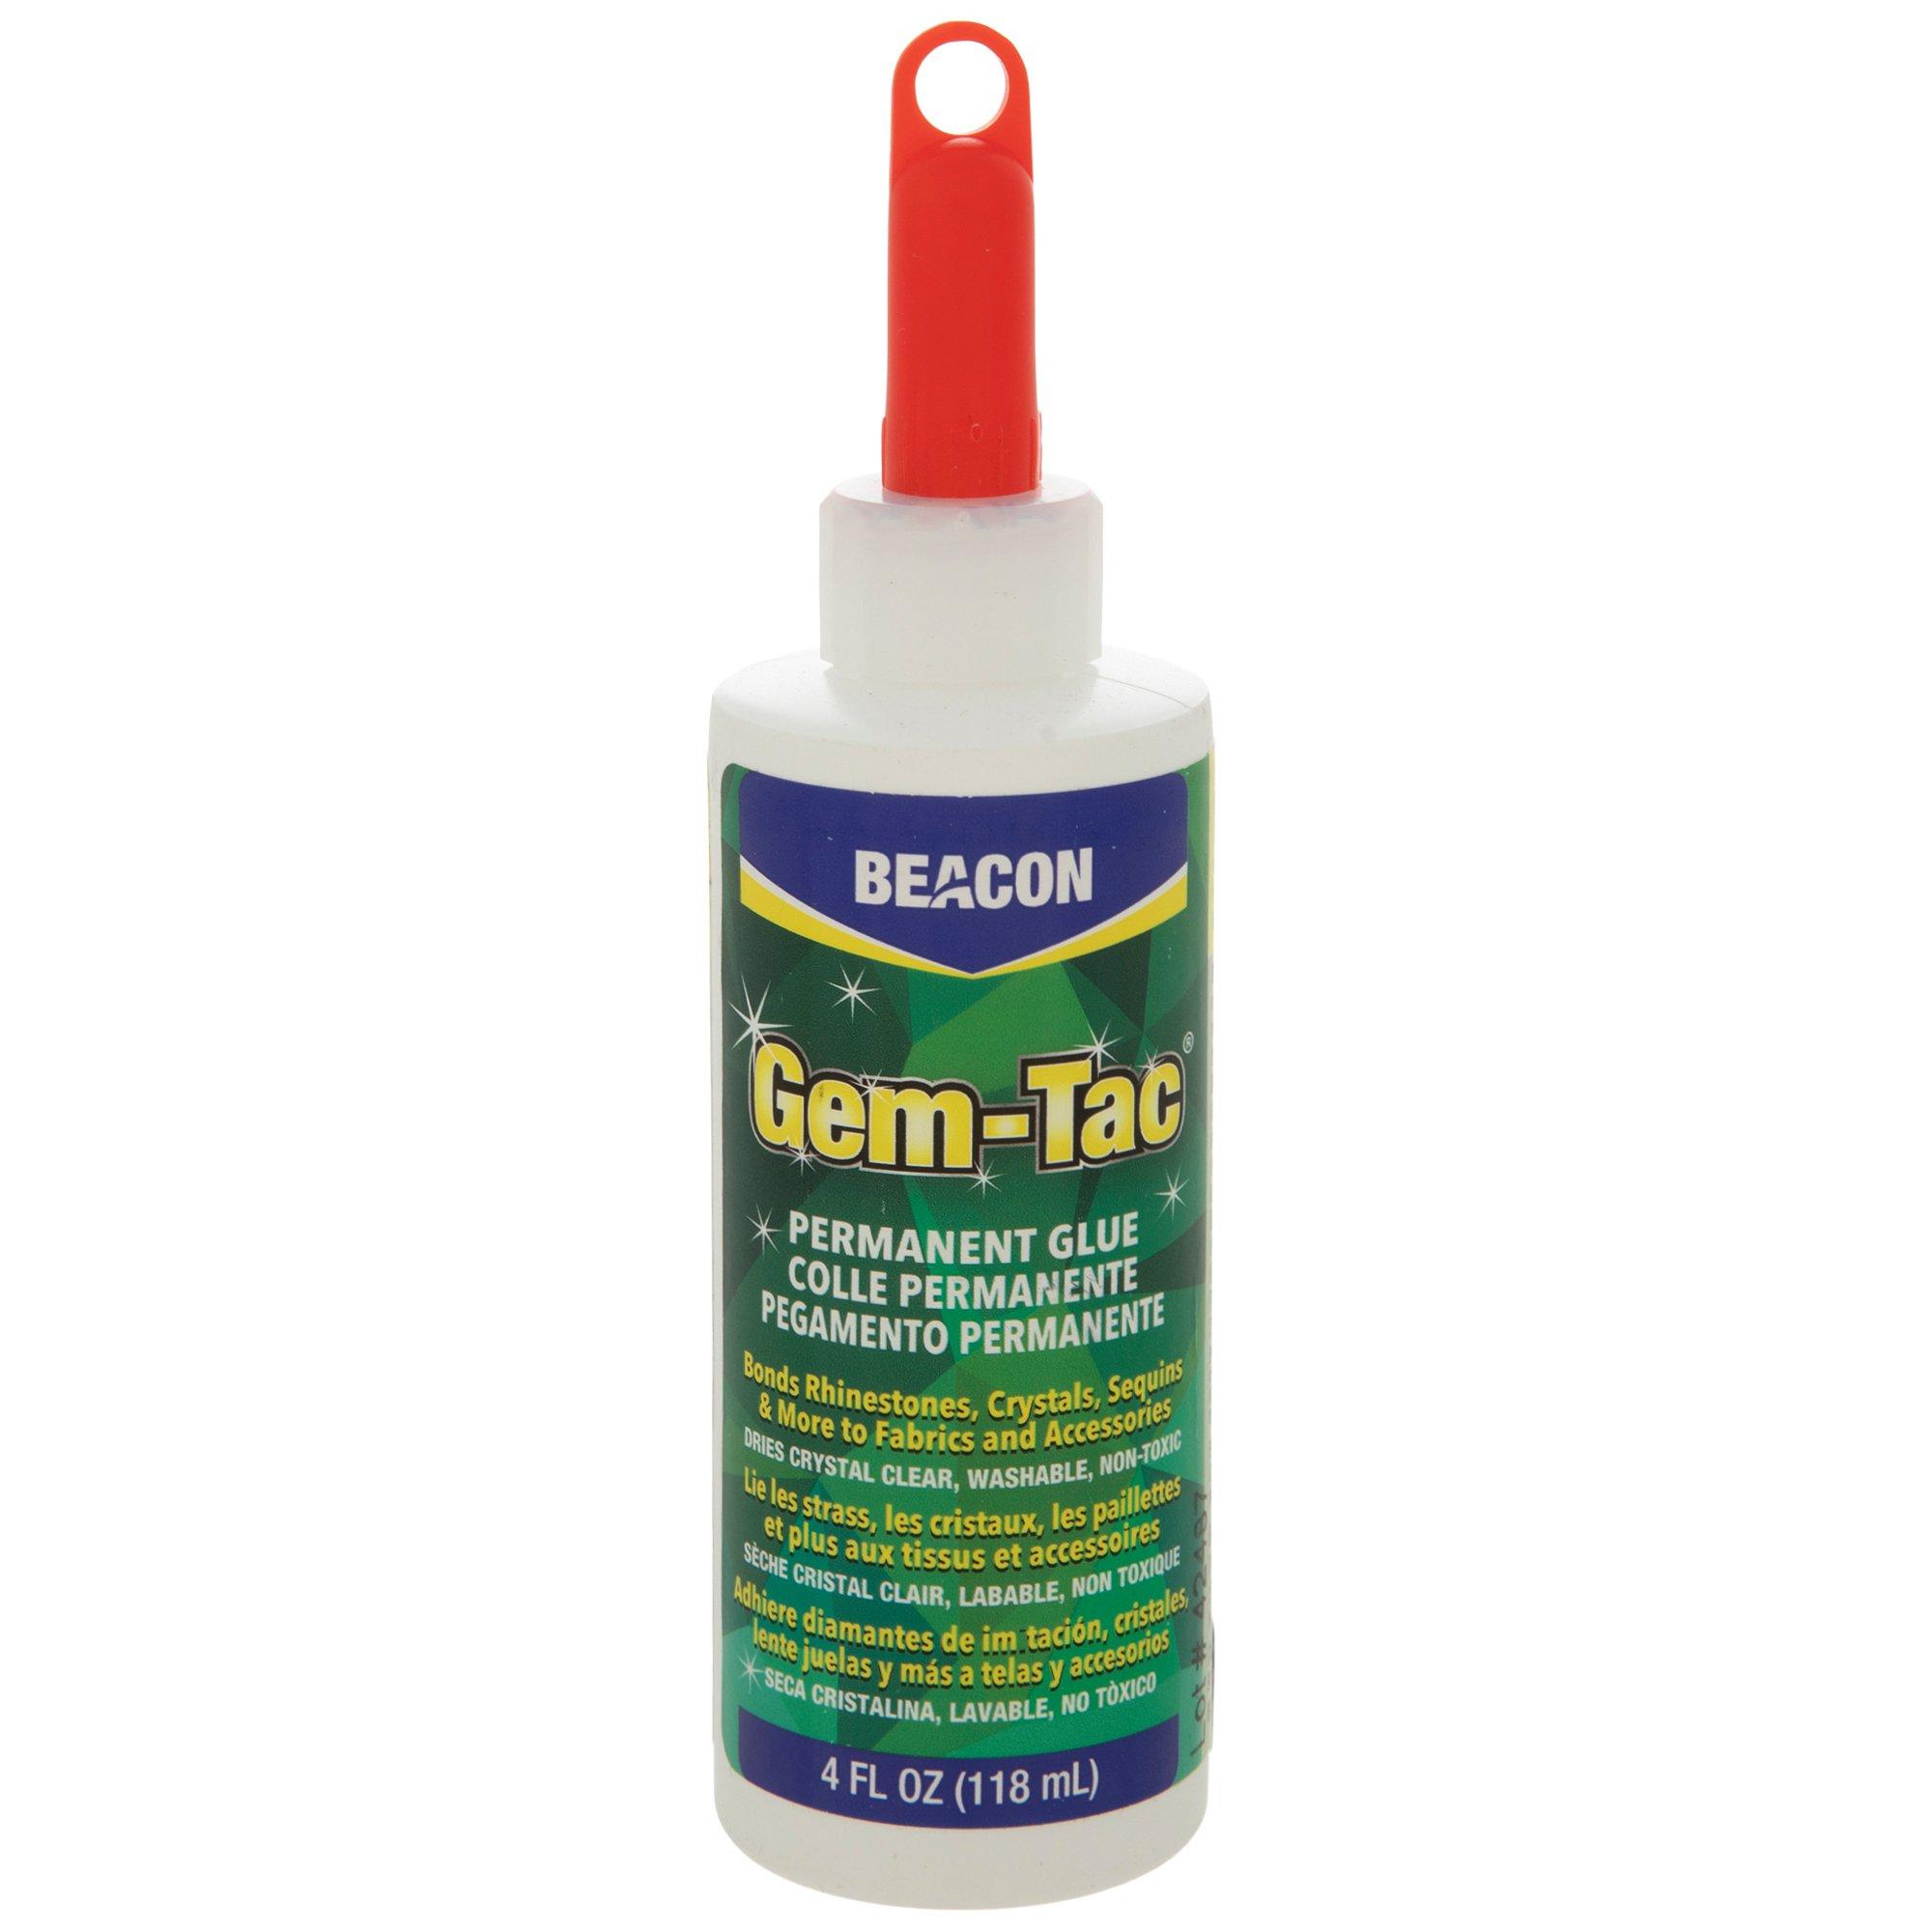 Gem-Tac Permanent Adhesive- 4 oz.